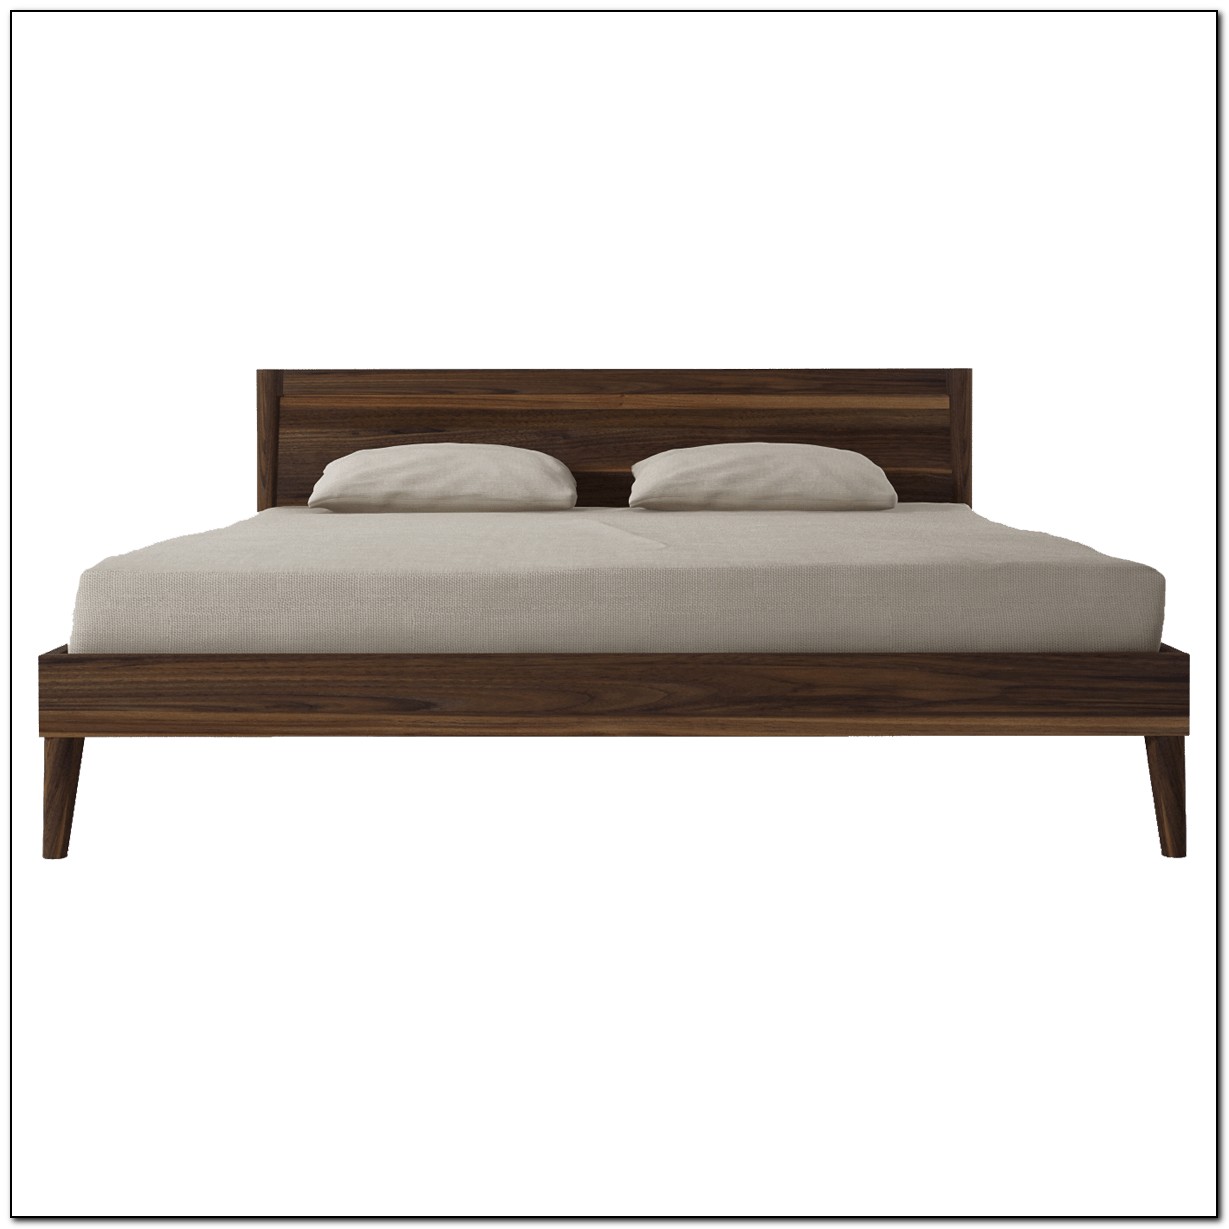 Wood Platform Bed King